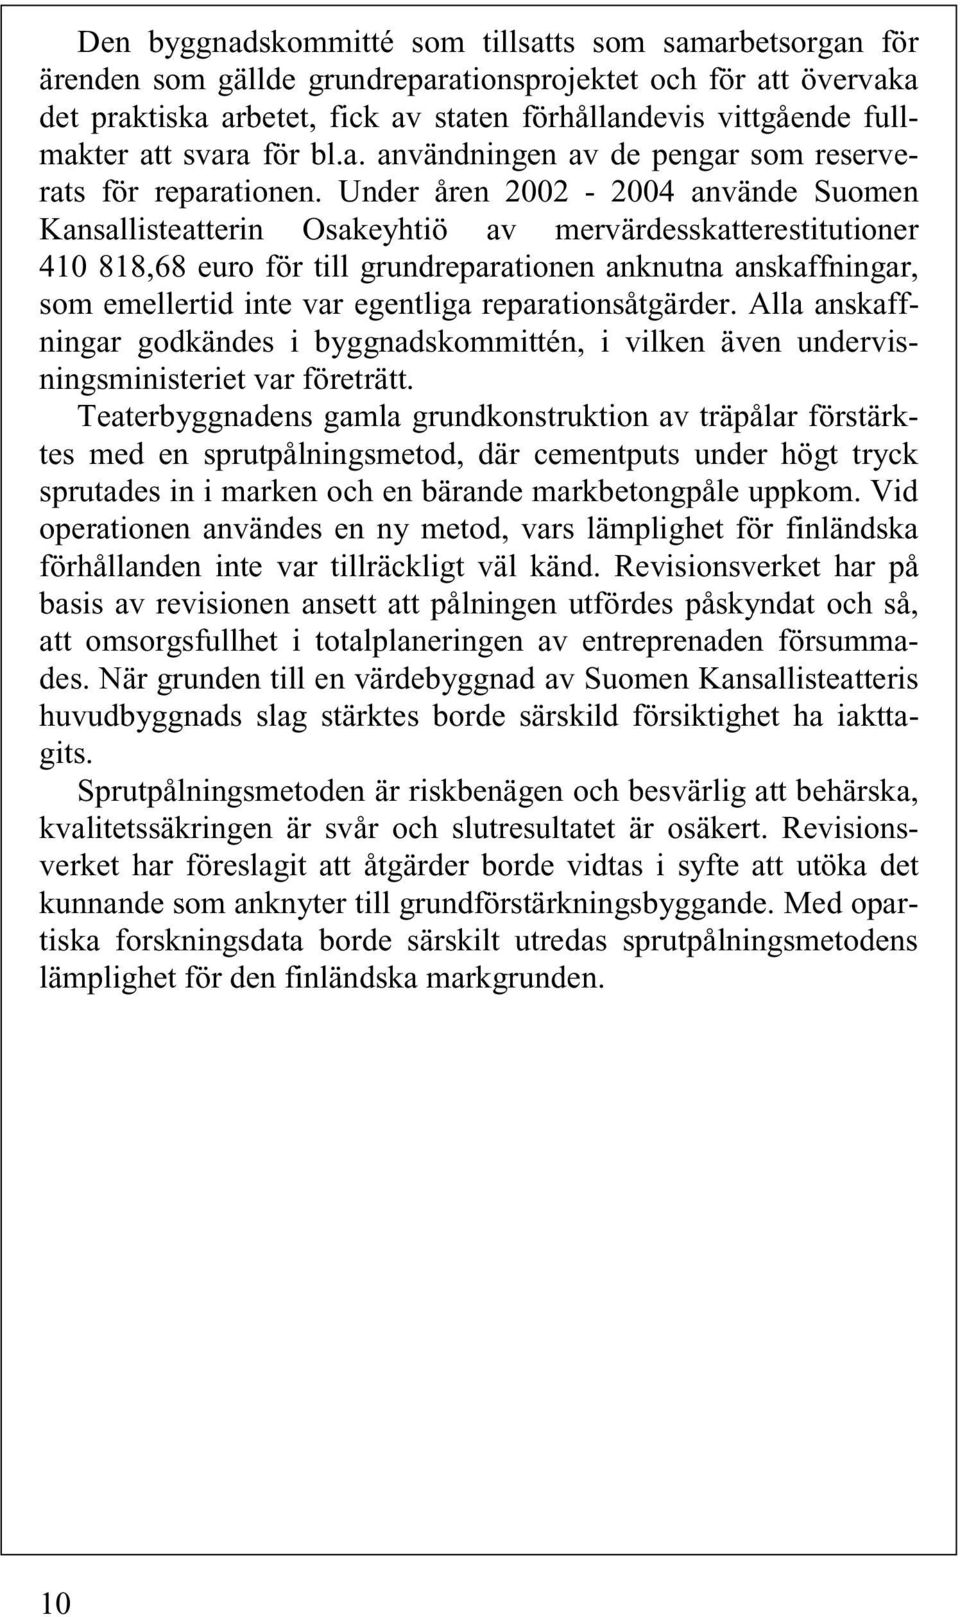 Under åren 2002-2004 använde Suomen Kansallisteatterin Osakeyhtiö av mervärdesskatterestitutioner 410 818,68 euro för till grundreparationen anknutna anskaffningar, som emellertid inte var egentliga